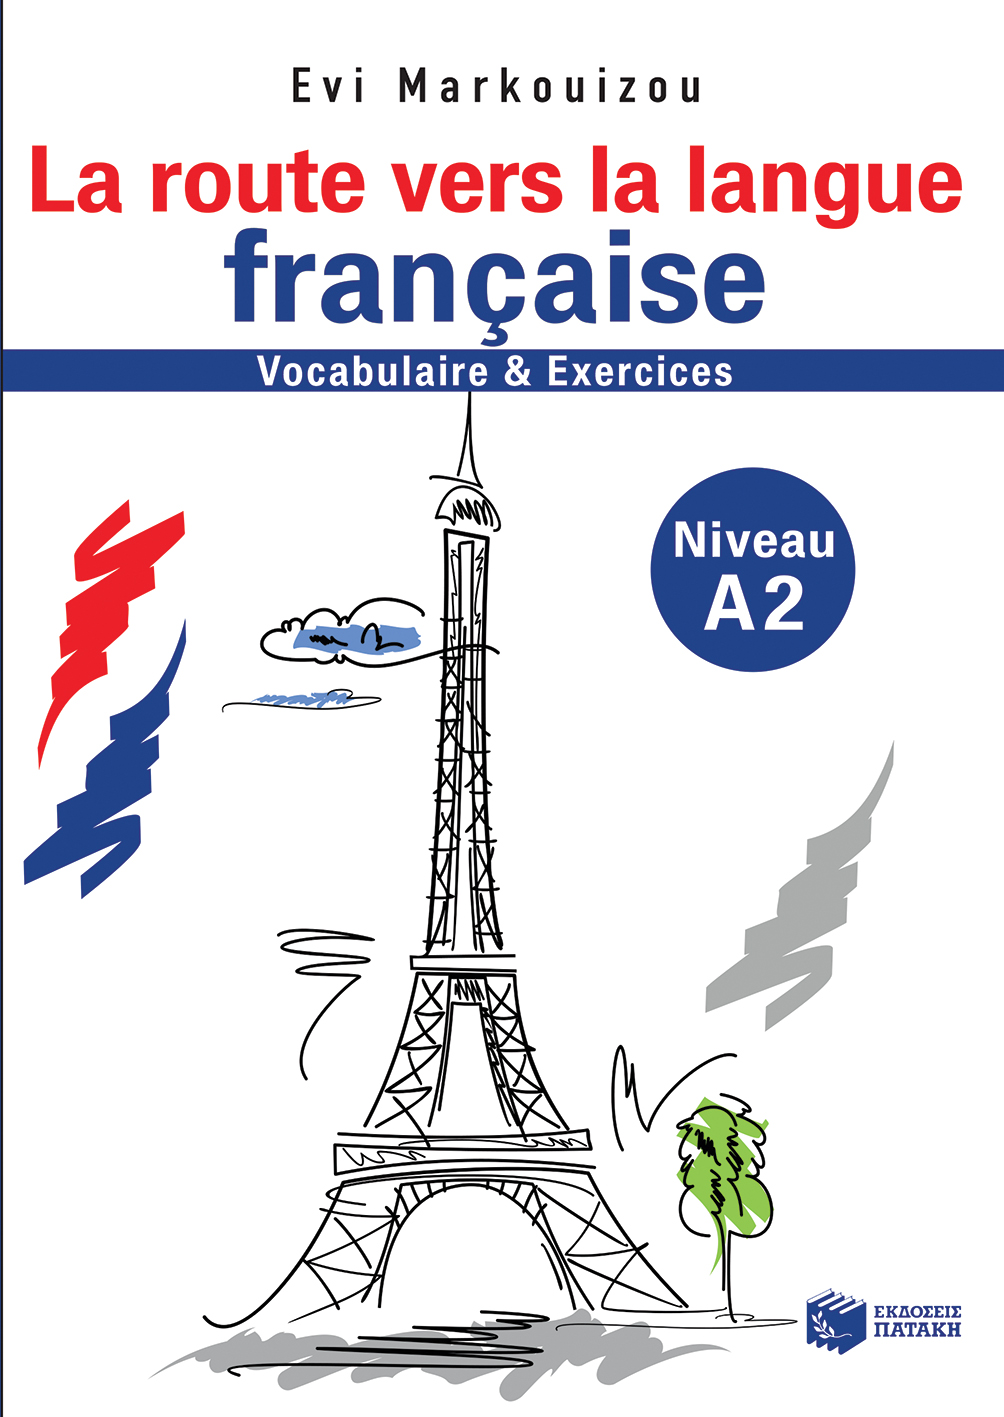 La route vers la langue francaise-vocabulaire et exercises-Niveau A2